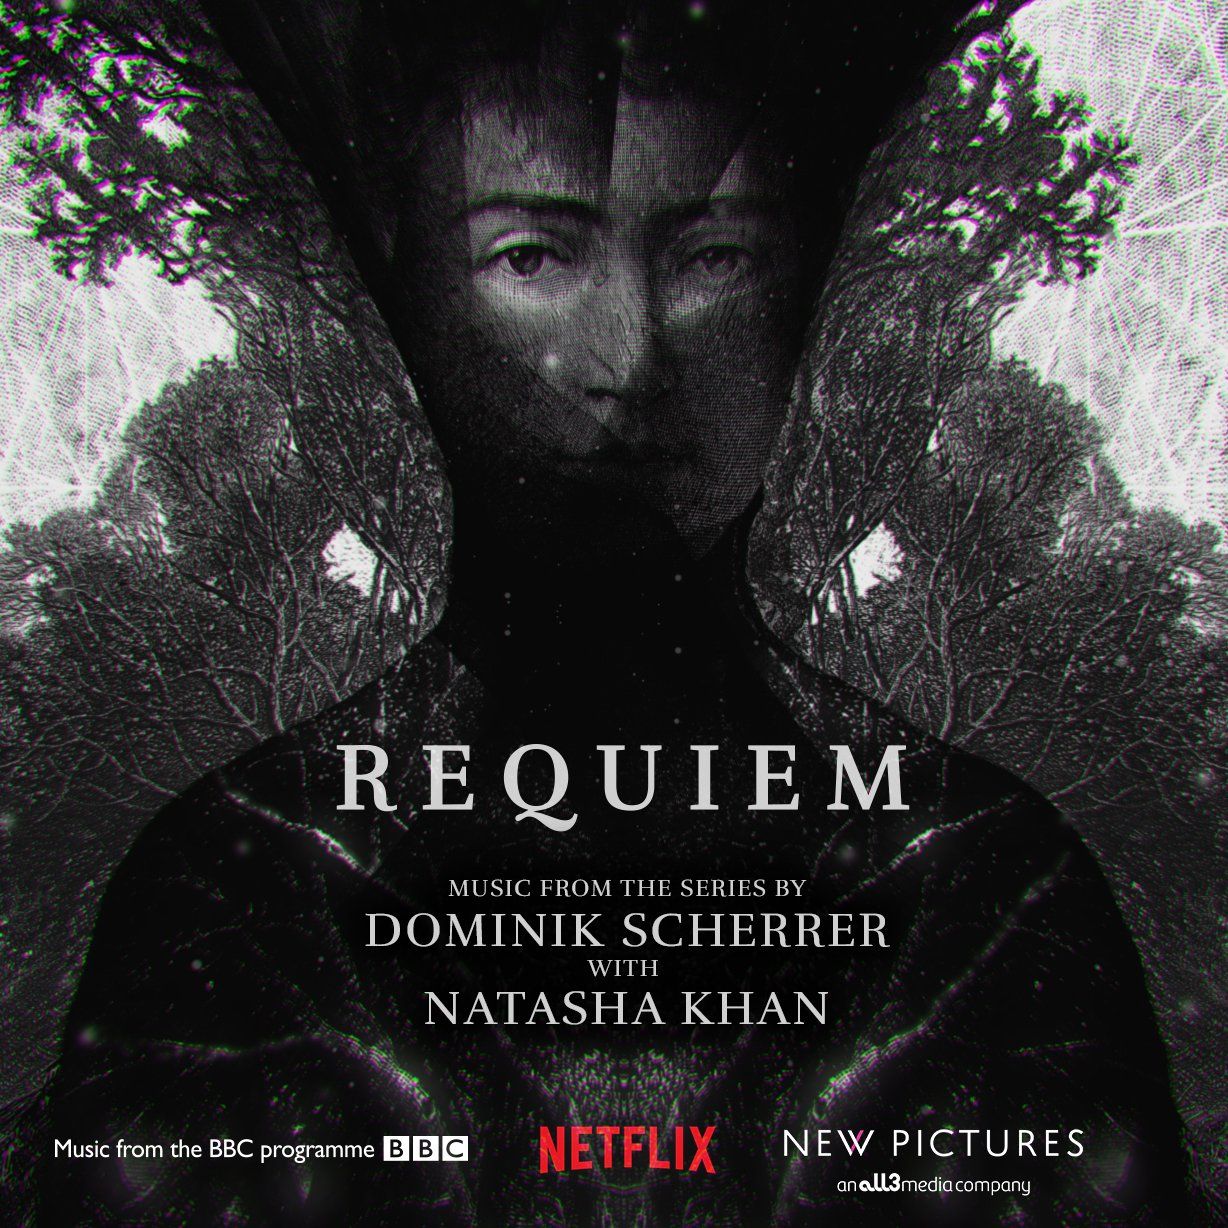 Dominik Scherrer about the music in ‘Requiem’ (BBC / Netflix)